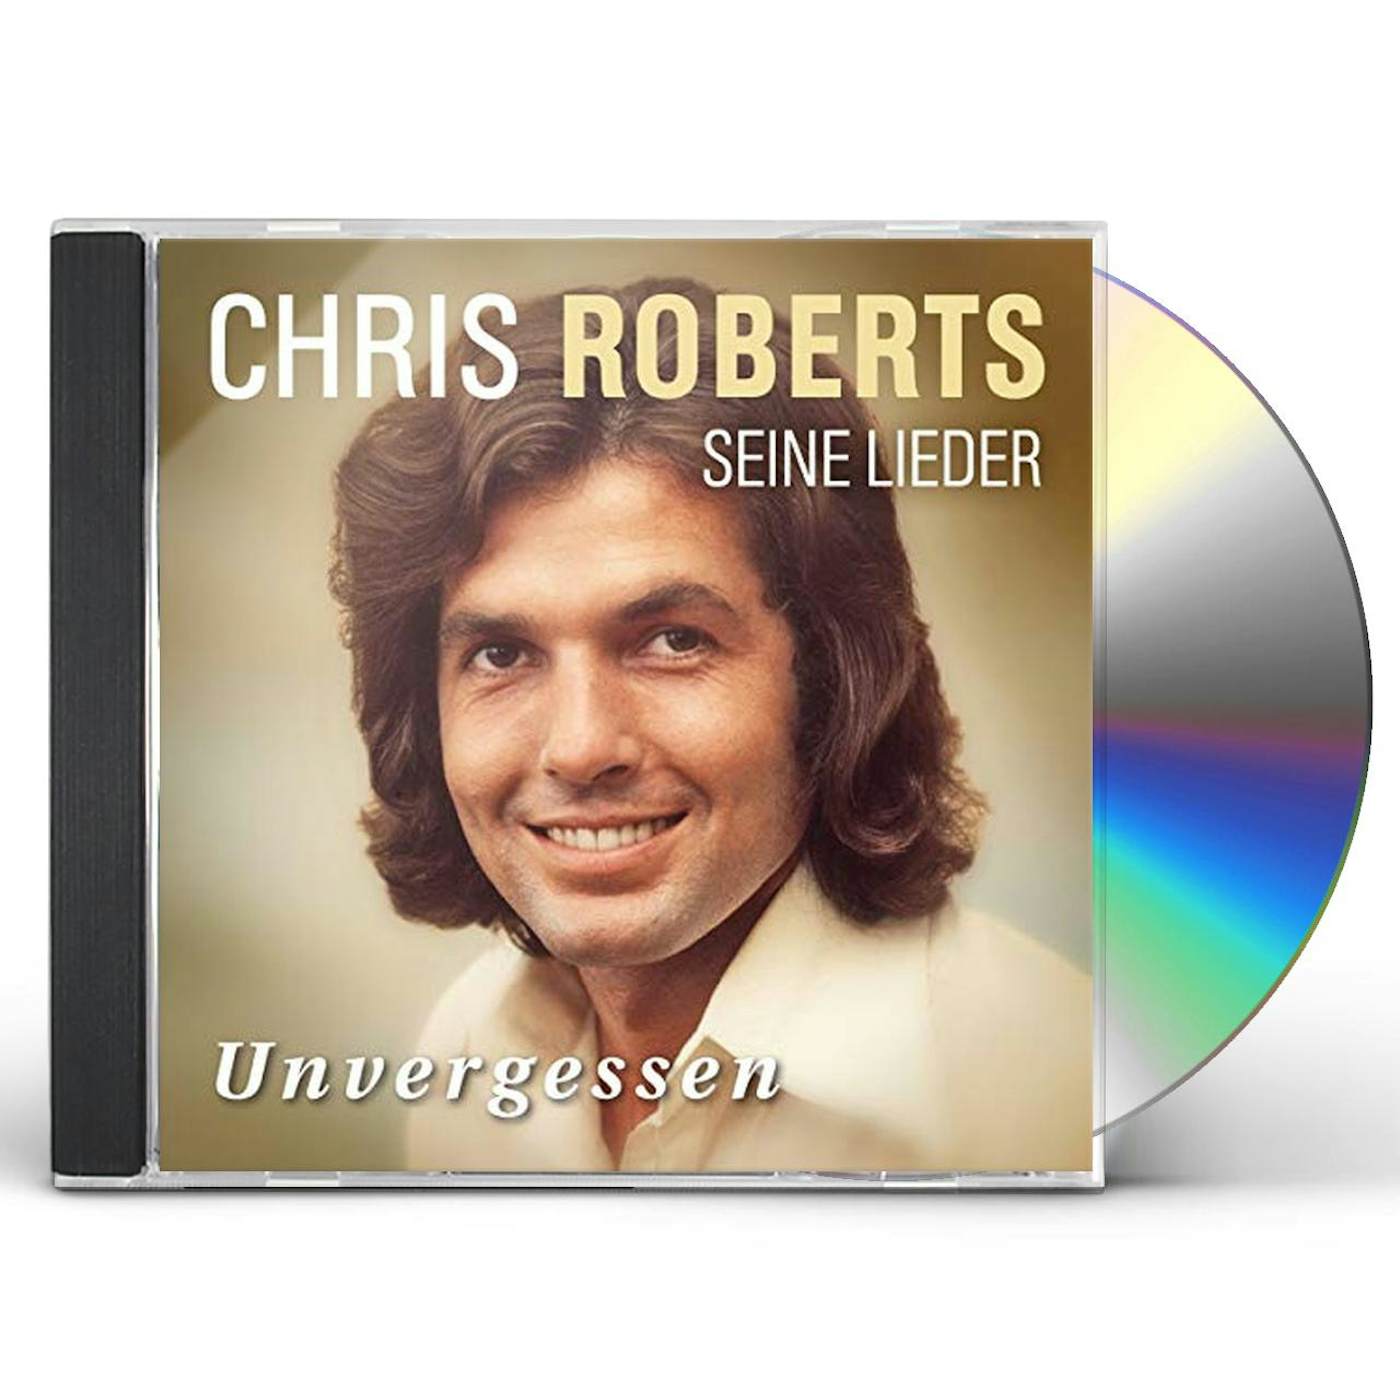 Chris Roberts UNVERGESSEN: DAS BESTE CD